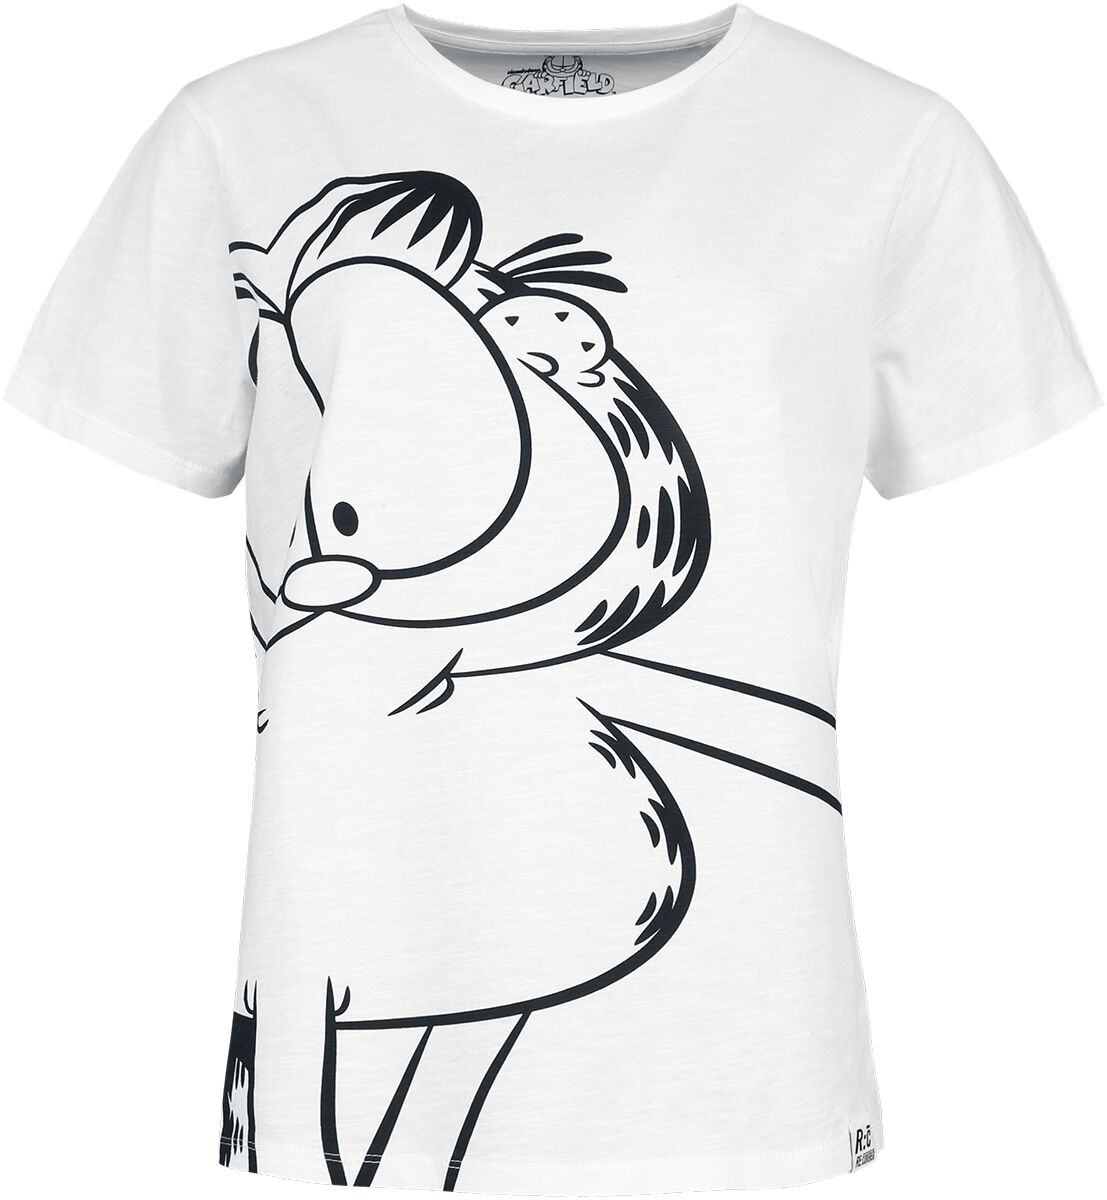 T-Shirt Manches courtes de Garfield - Re:Covered - S à XXL - pour Femme - blanc